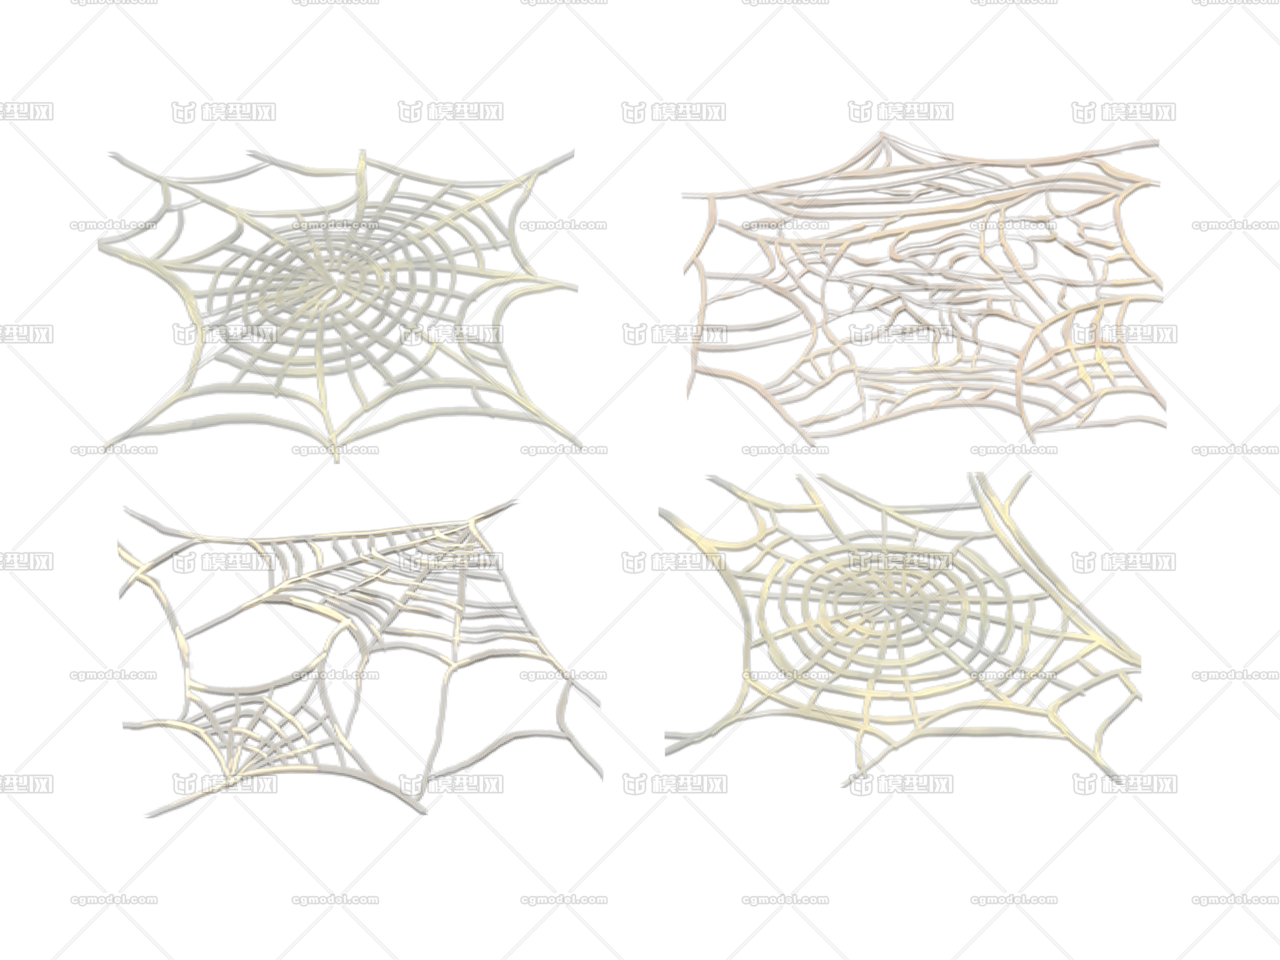 发散蛛网模型图片